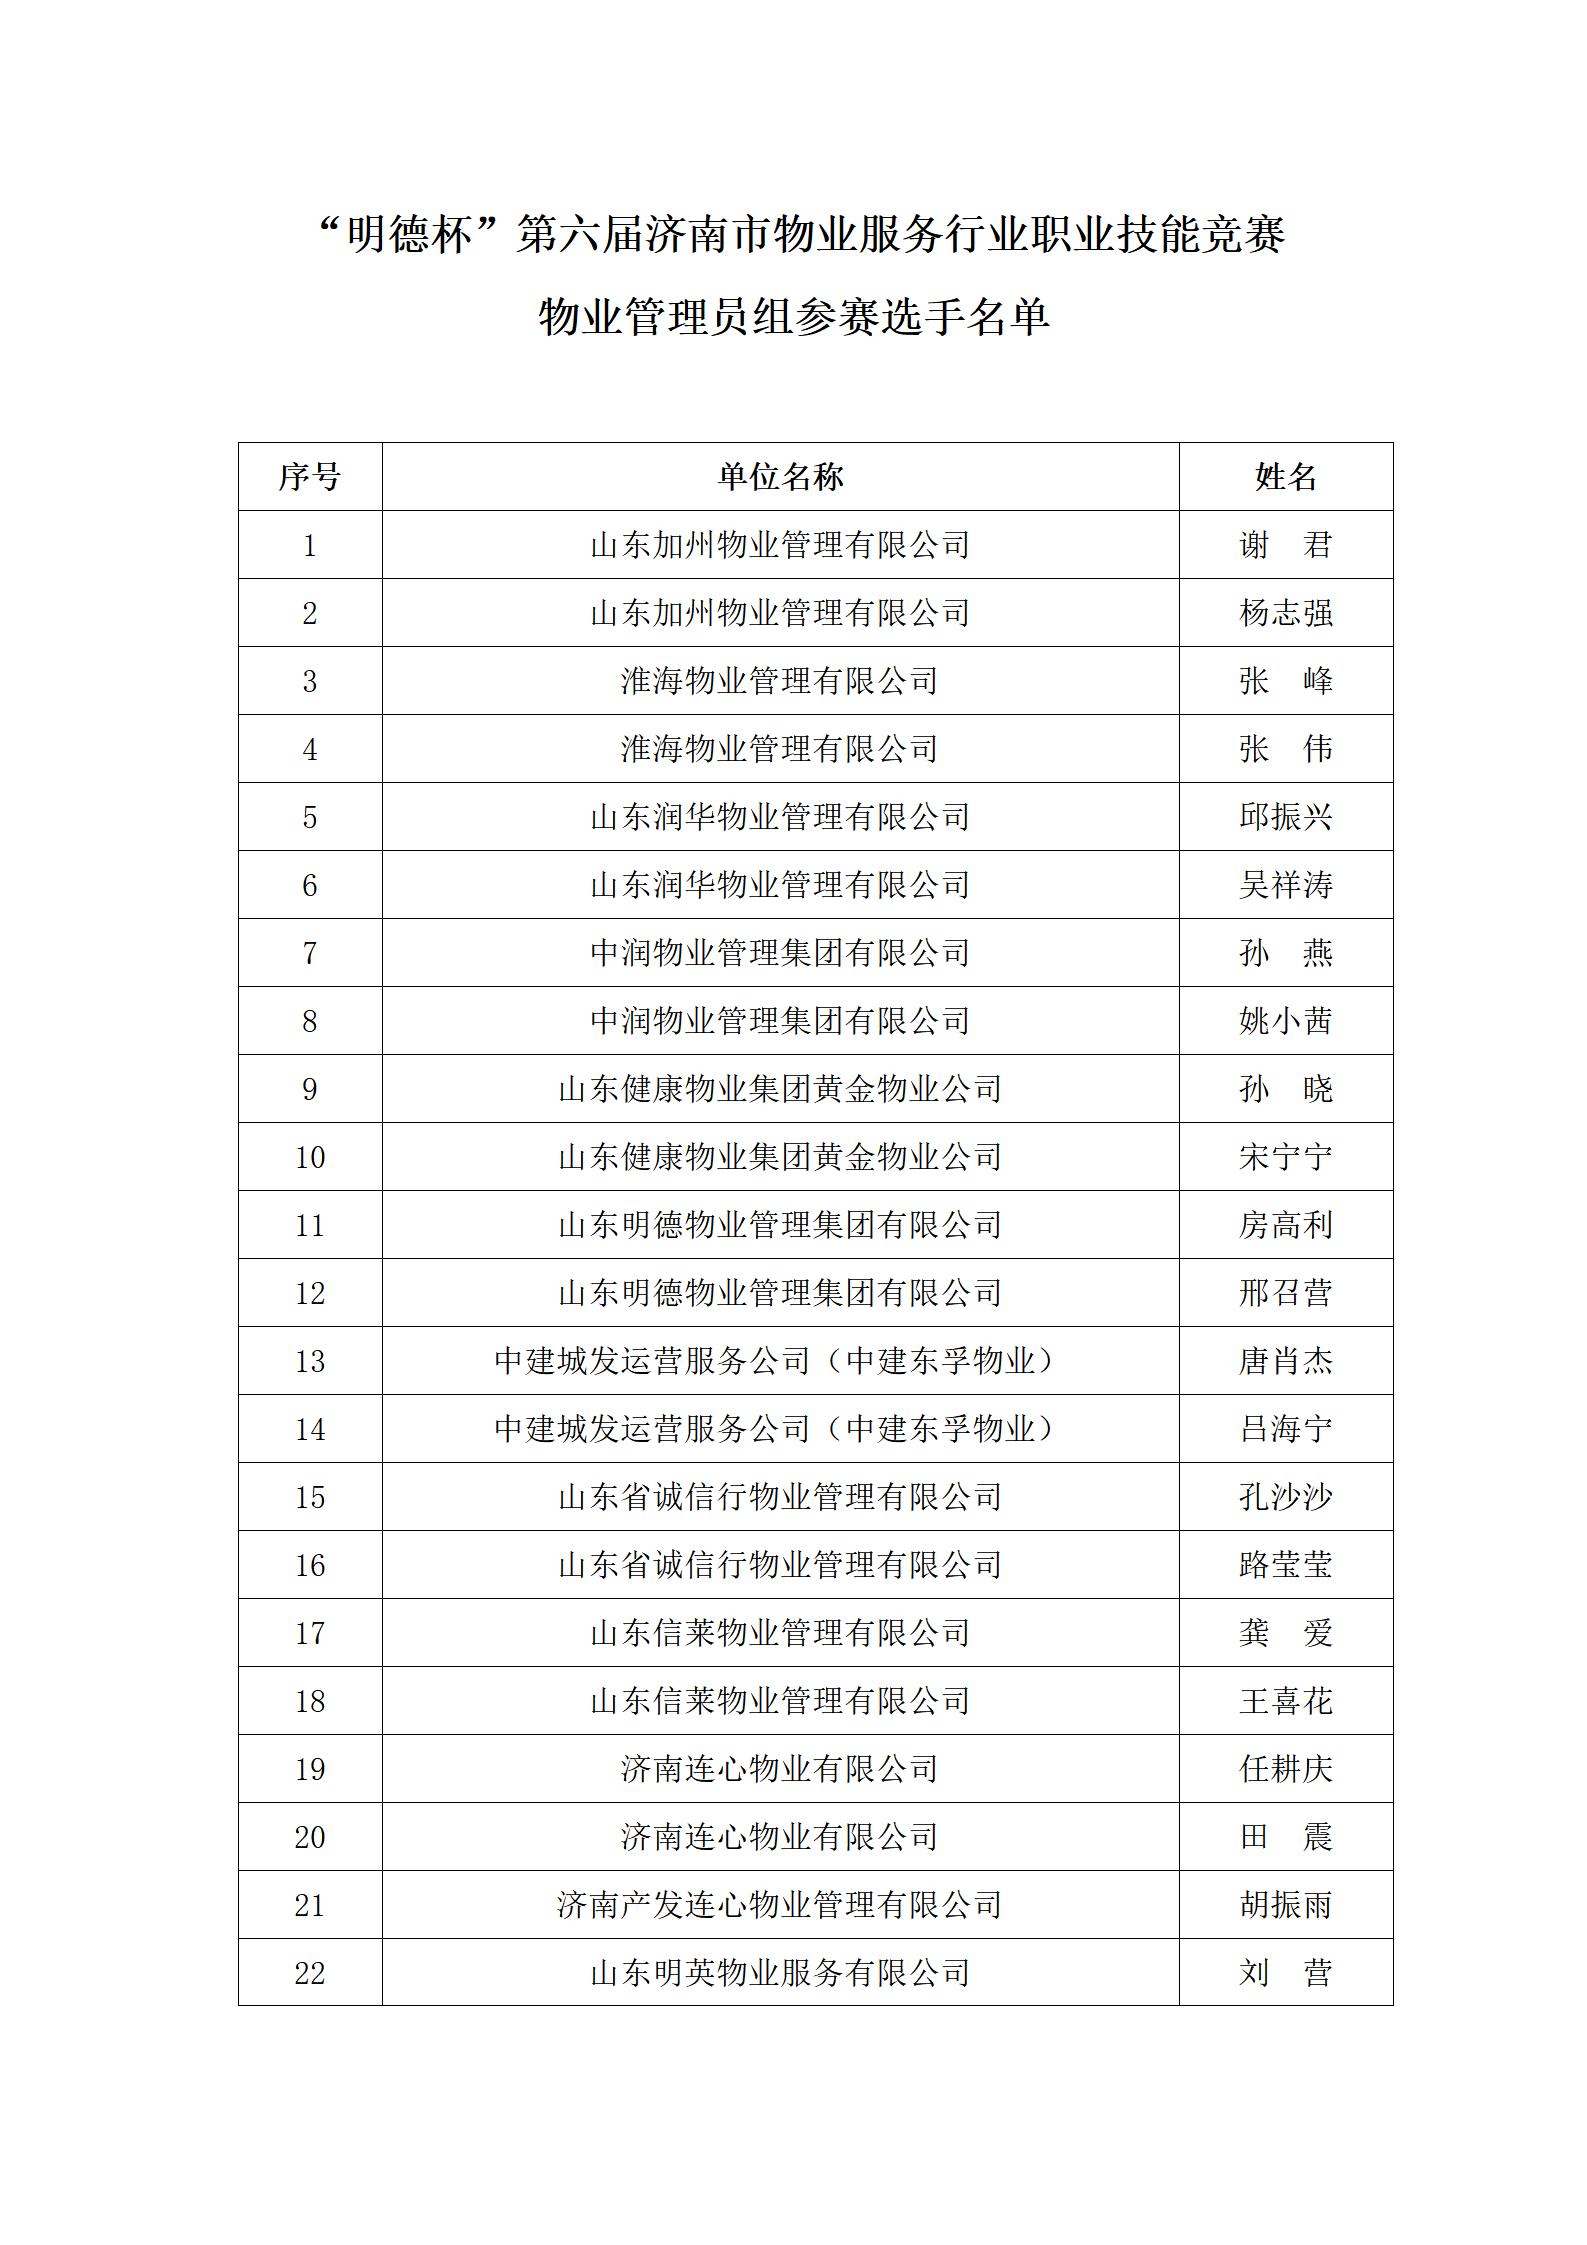 关于“明德杯”第六届济南市物业服务行业职业技能竞赛选手名单的公示_02